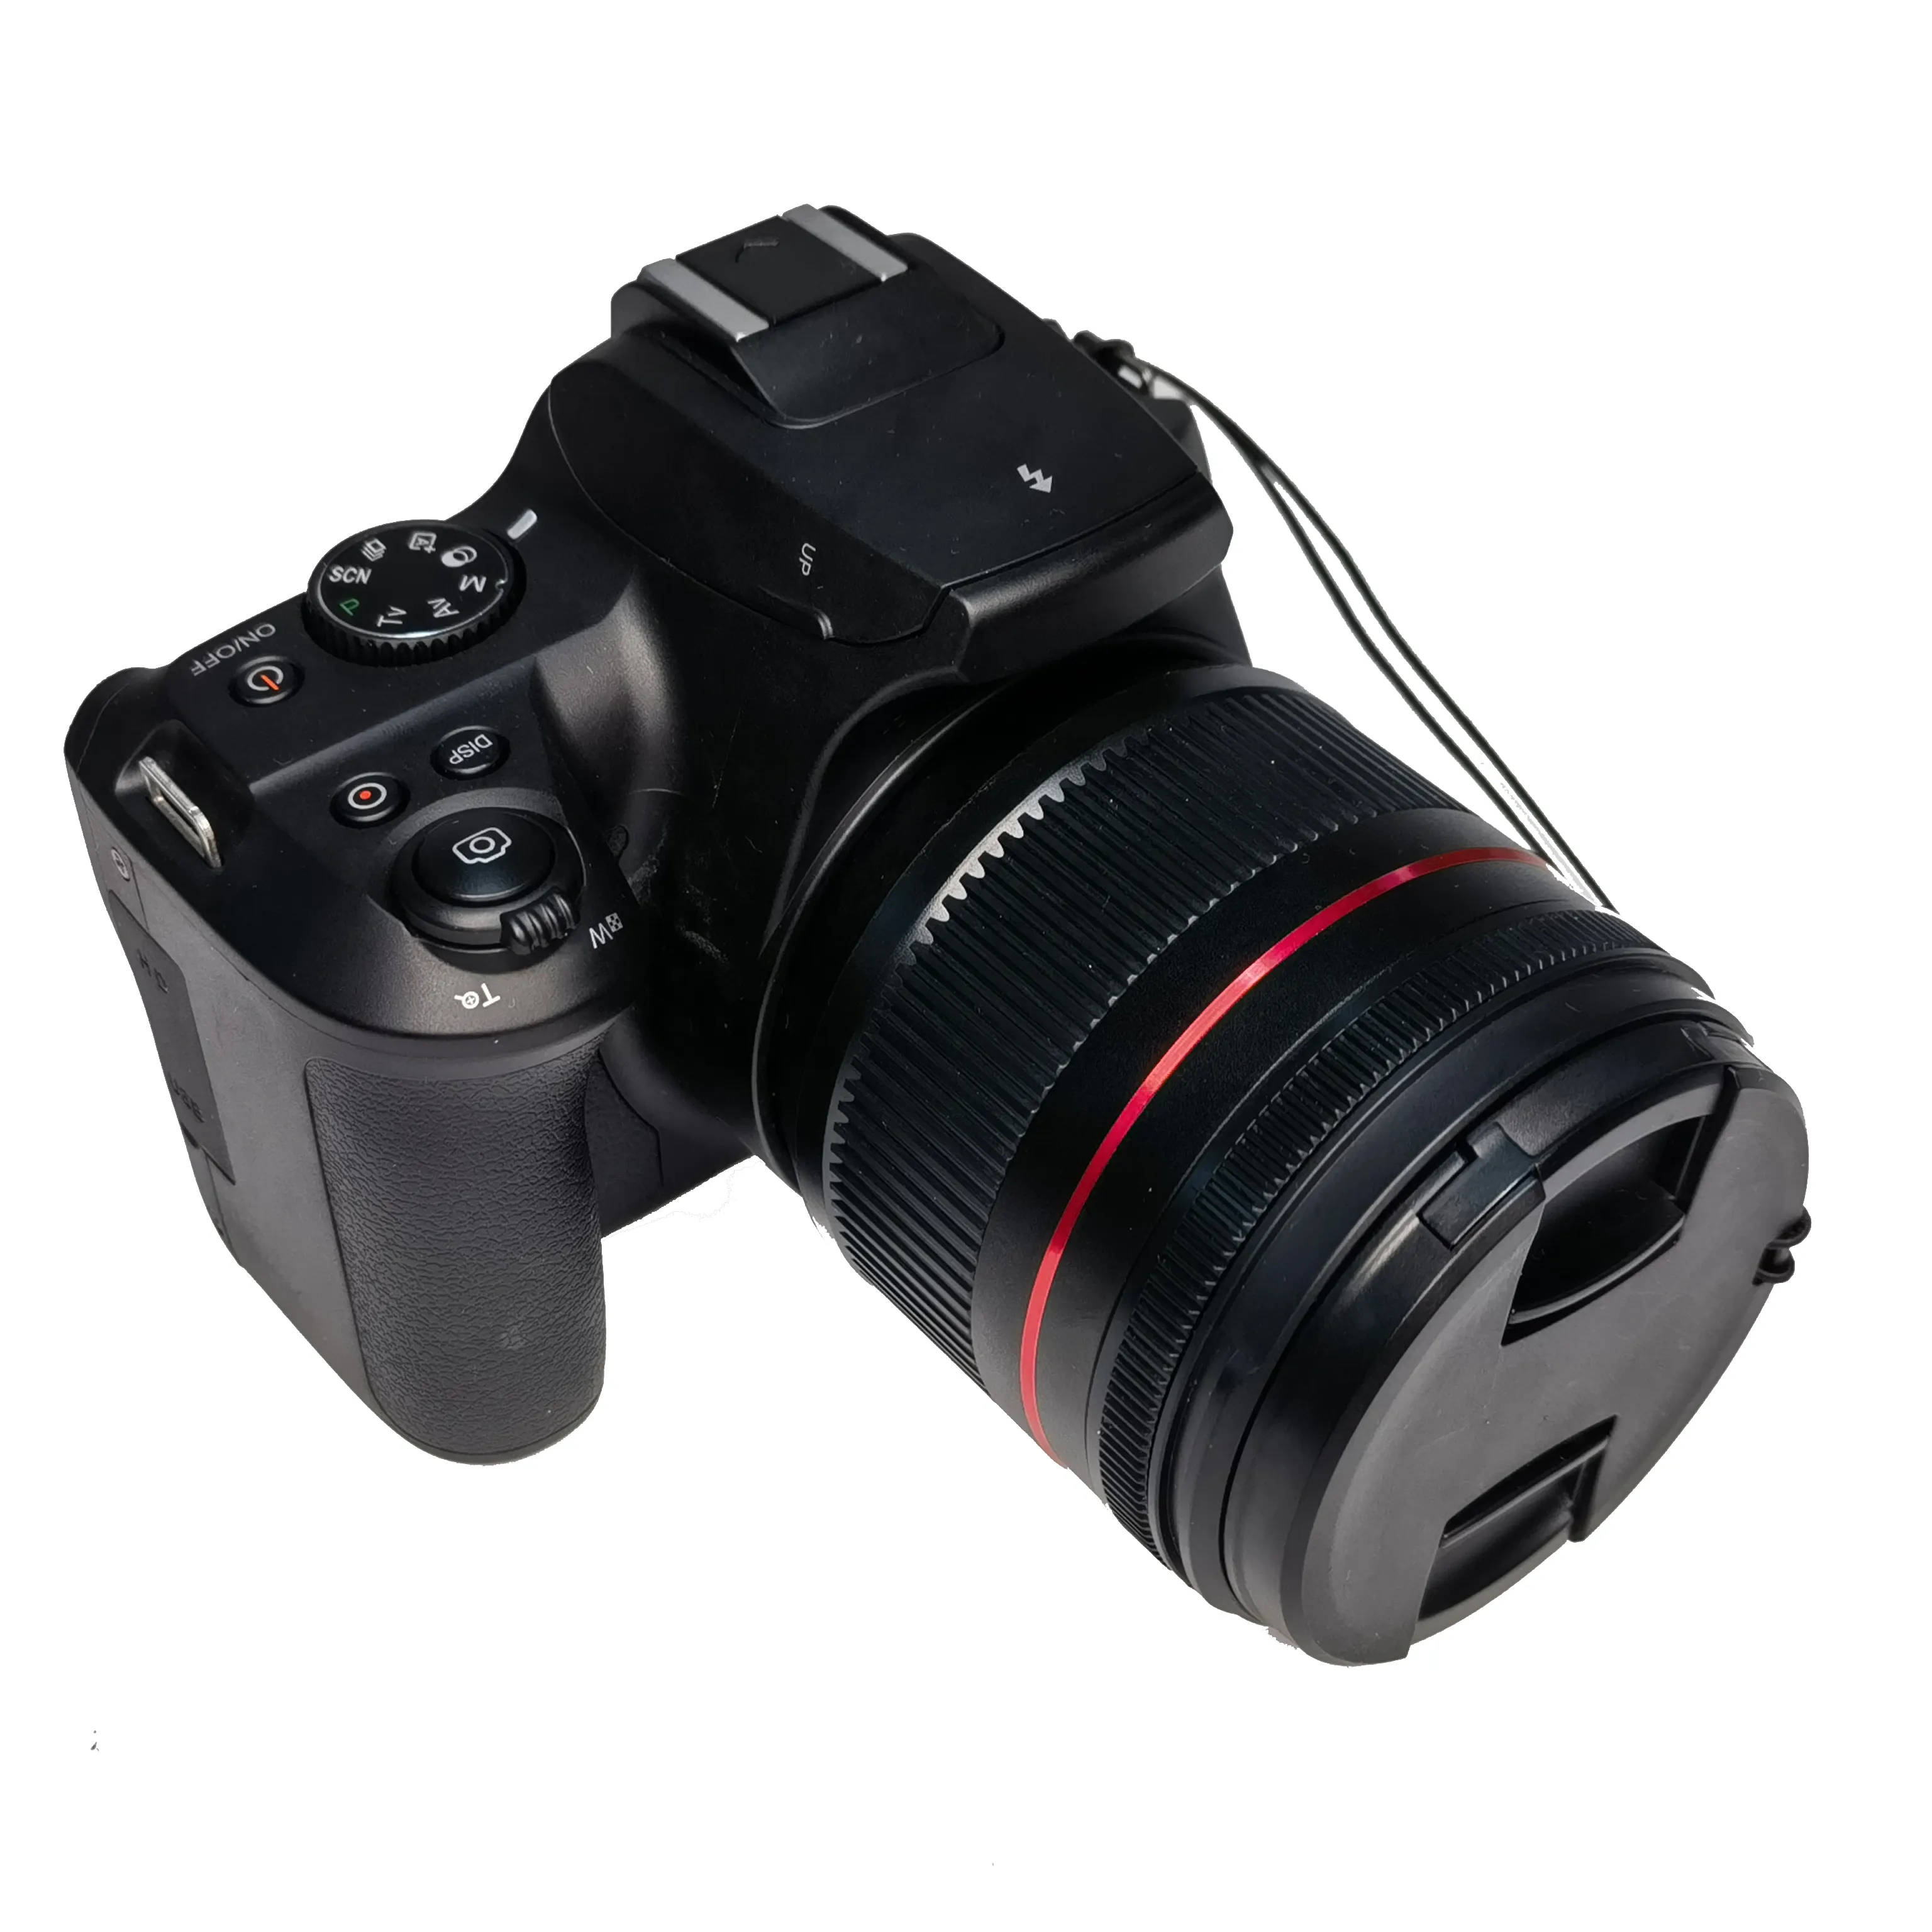 Winait 60メガピクセル家庭用3.0インチディスプレイと12倍光学ズームカメラを備えた4kDSLRデジタルカメラ